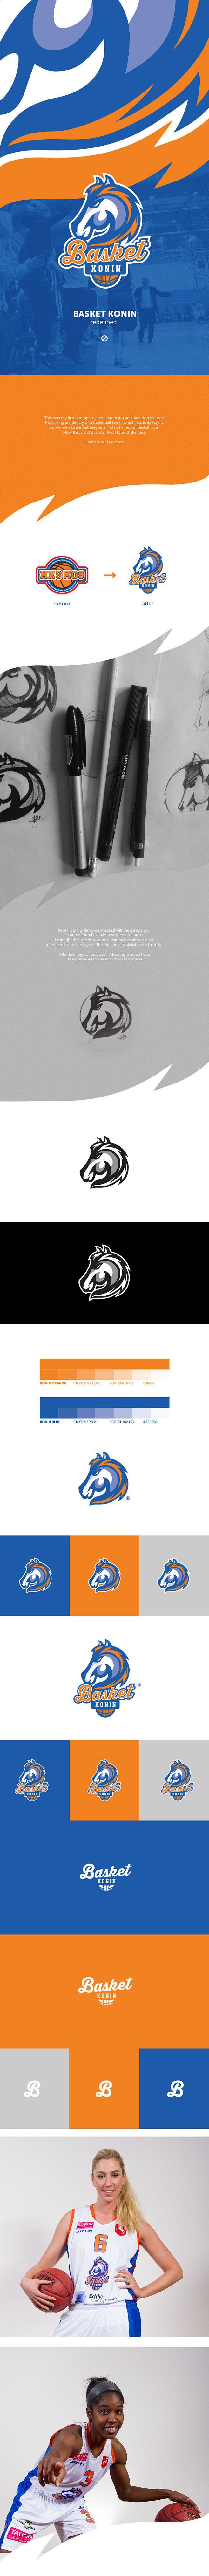 女子篮球队logo设计/马logo设计/...